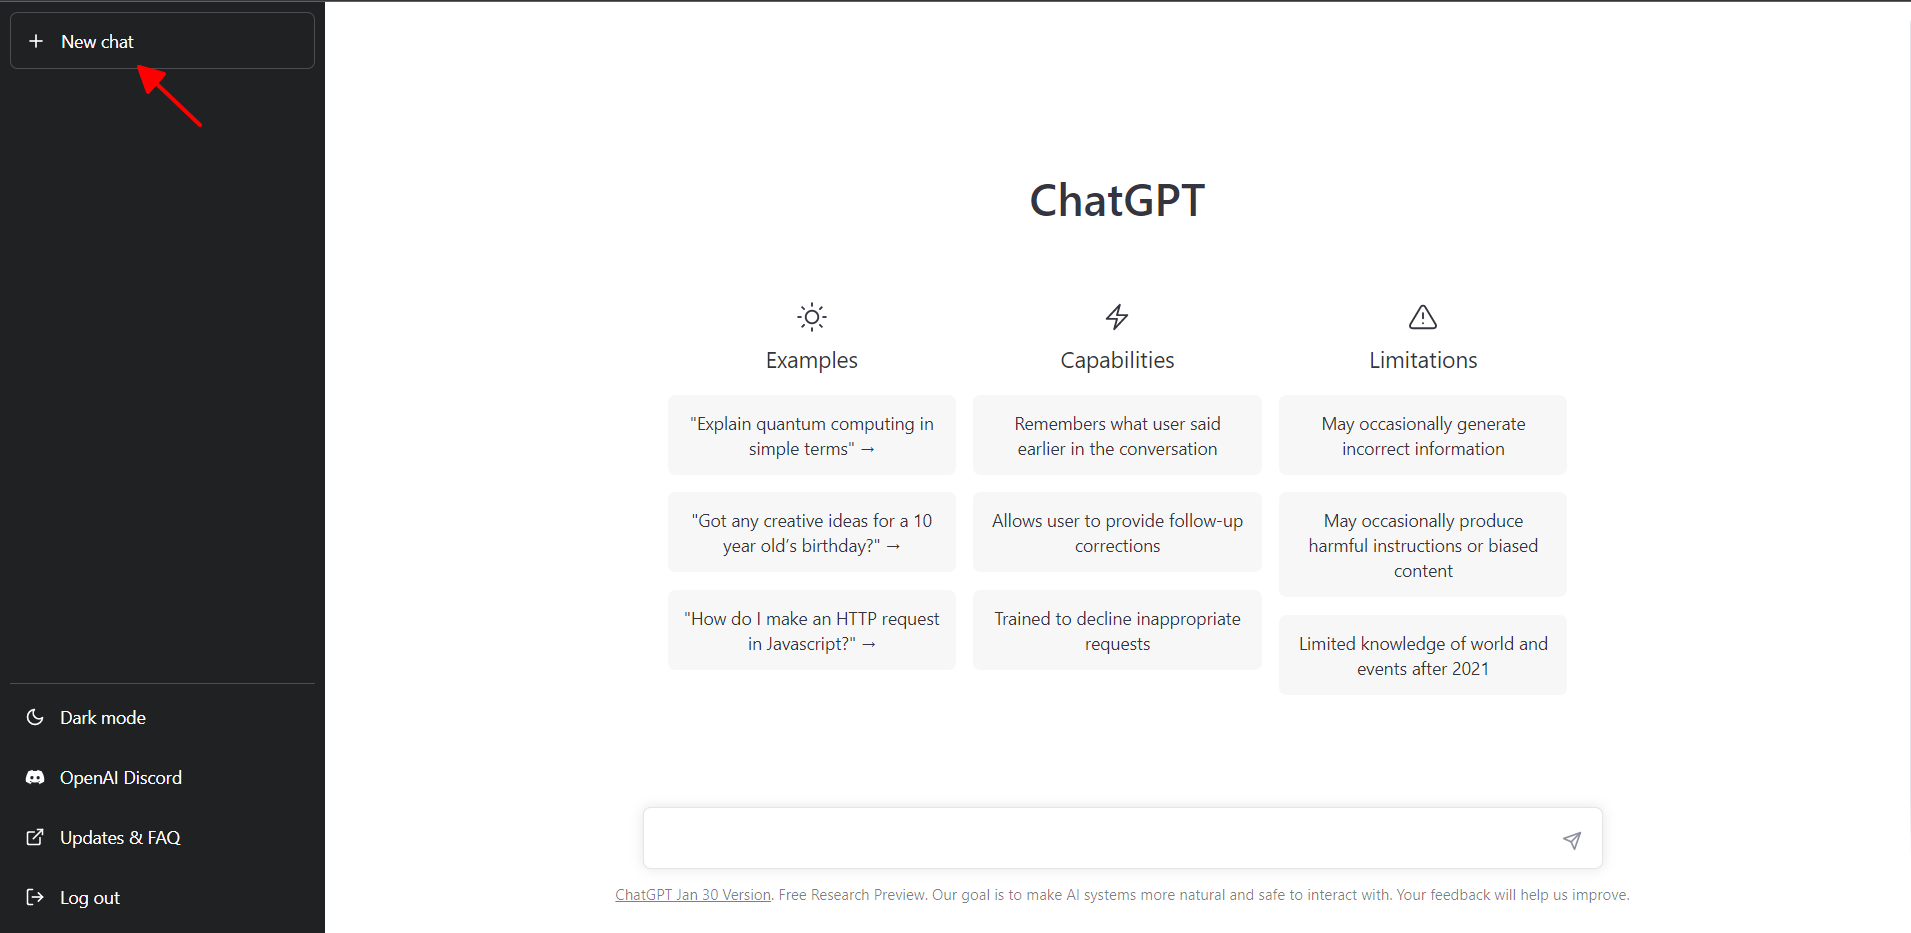 Bấm New chat để bắt đầu cuộc hội thoại mới với ChatGPT - cách dùng ChatGPT